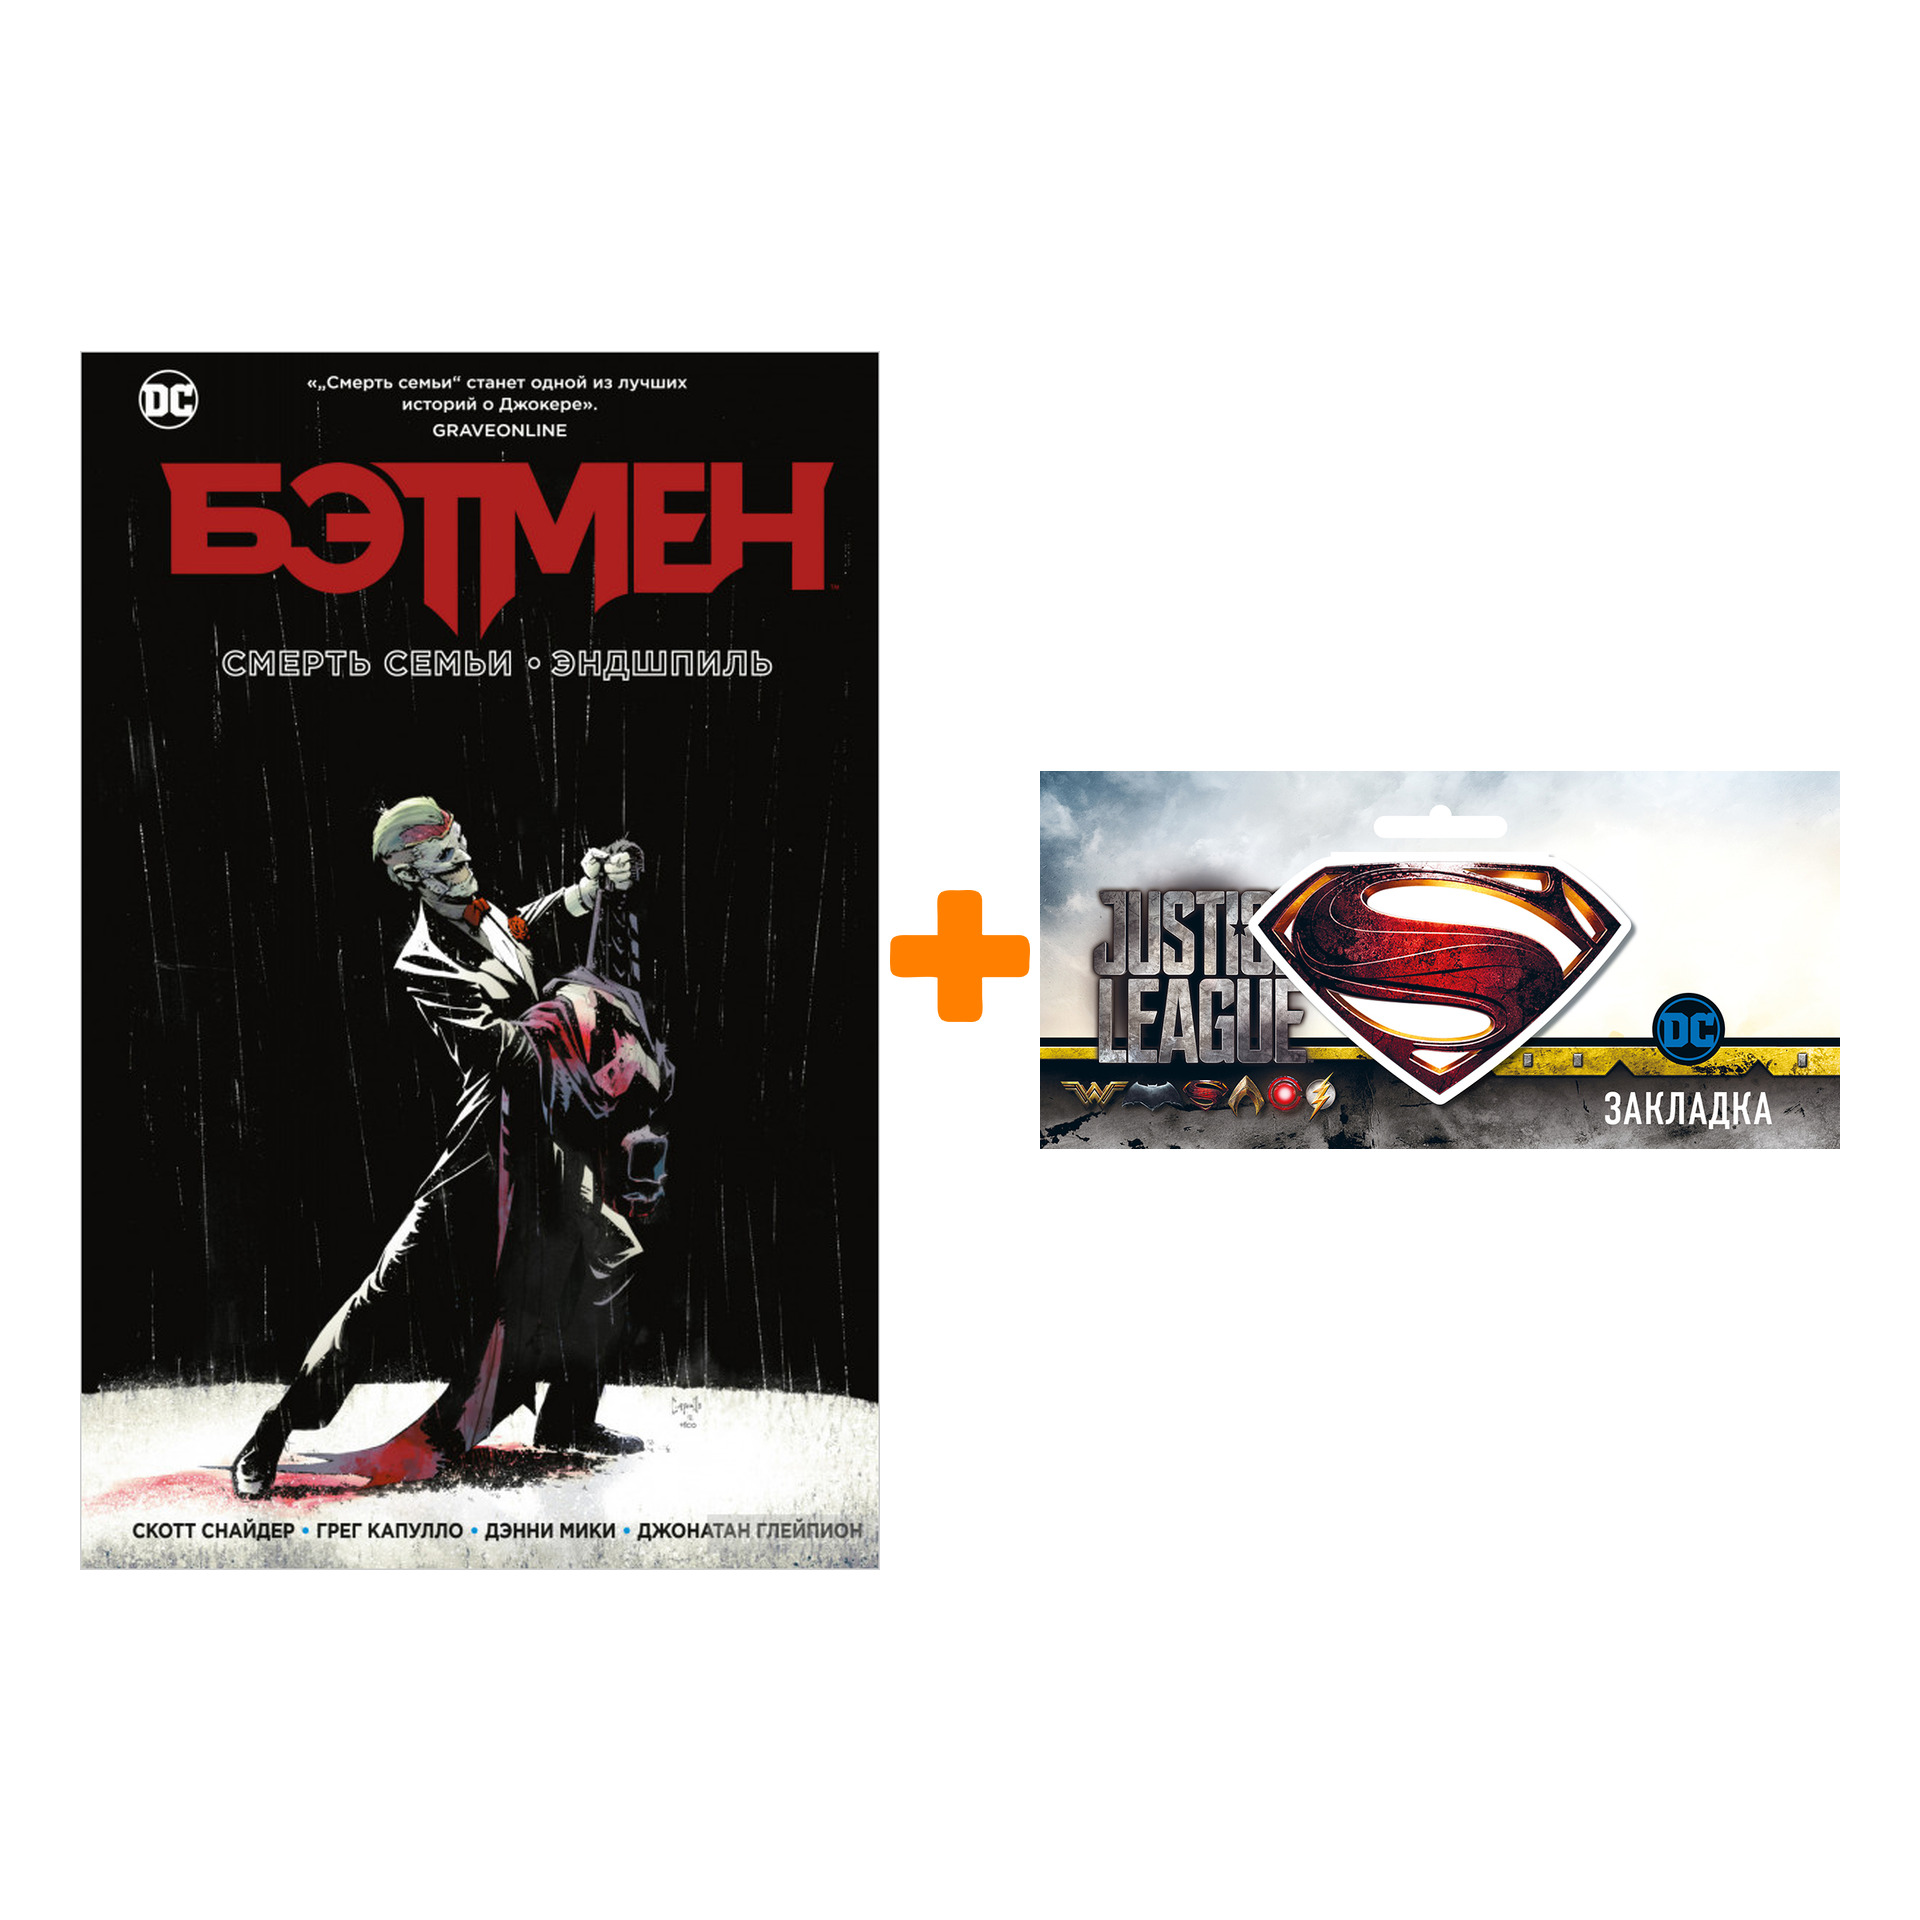 Набор Комикс Бэтмен Смерть семьи Эндшпиль + Закладка DC Justice League Superman магнитная